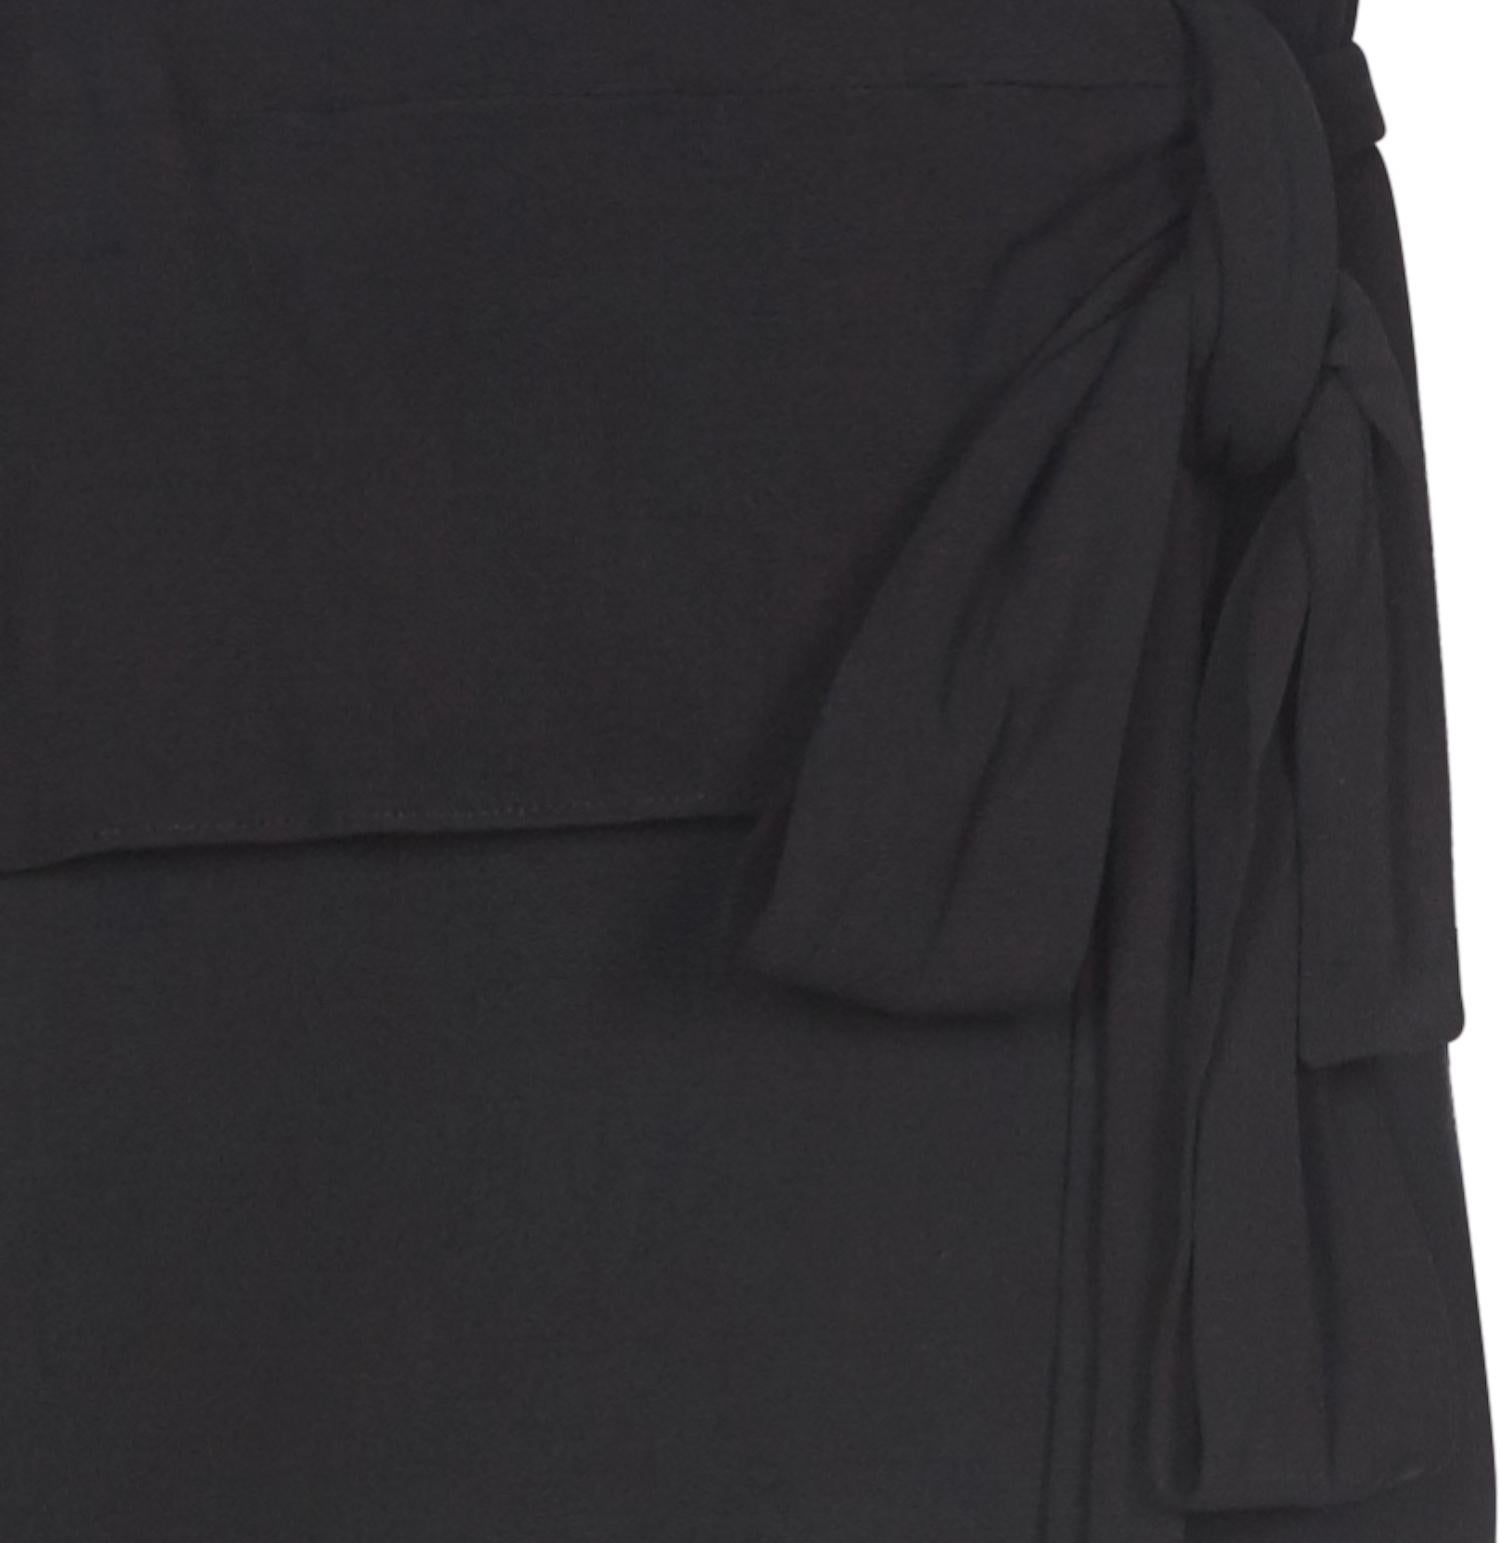 Yves Saint Laurent 1970s Black Silk Jersey Two Piece Suit For Sale 2